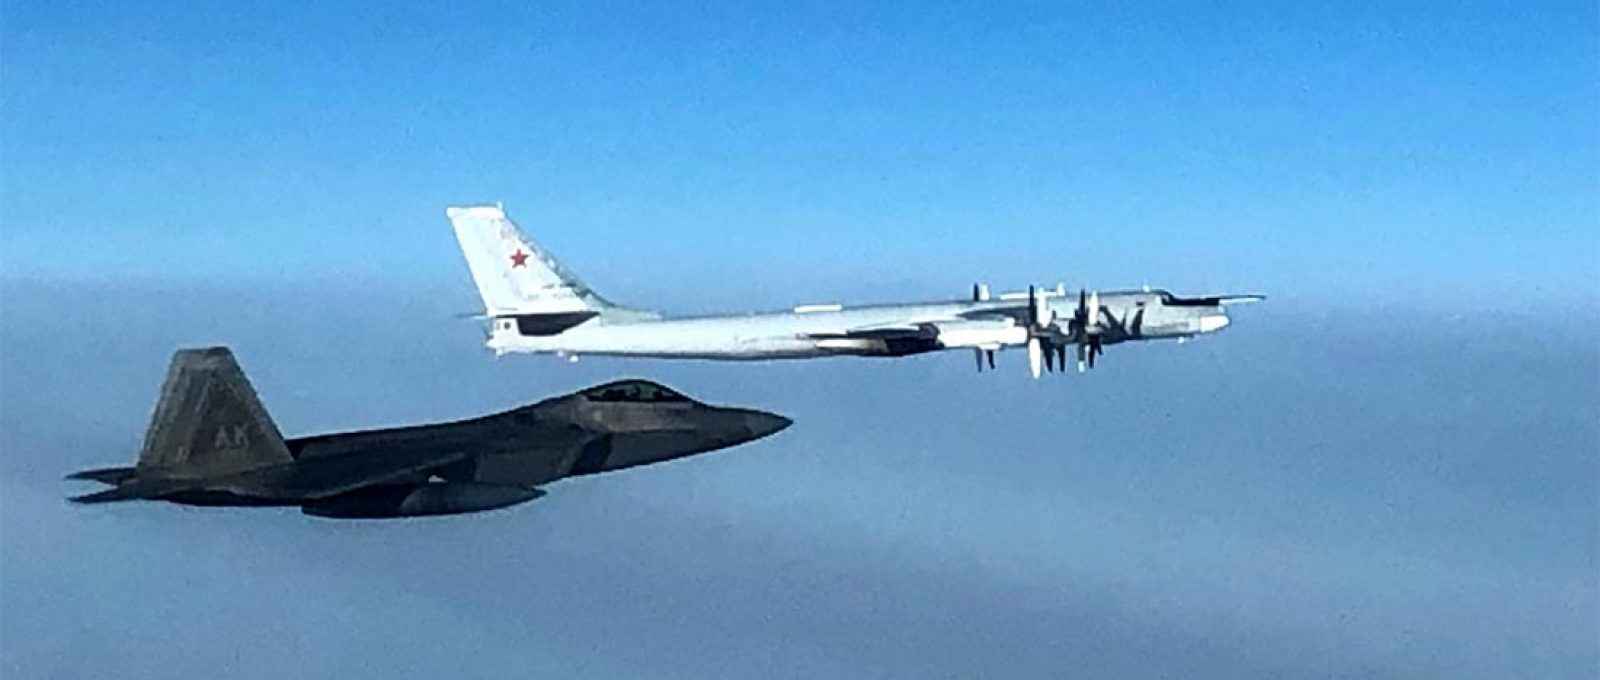 Caça F-22 Raptor intercepta um bombardeiro Tu-95 Bear russo no espaço aéreo internacional perto do Alasca (Foto: NORAD).